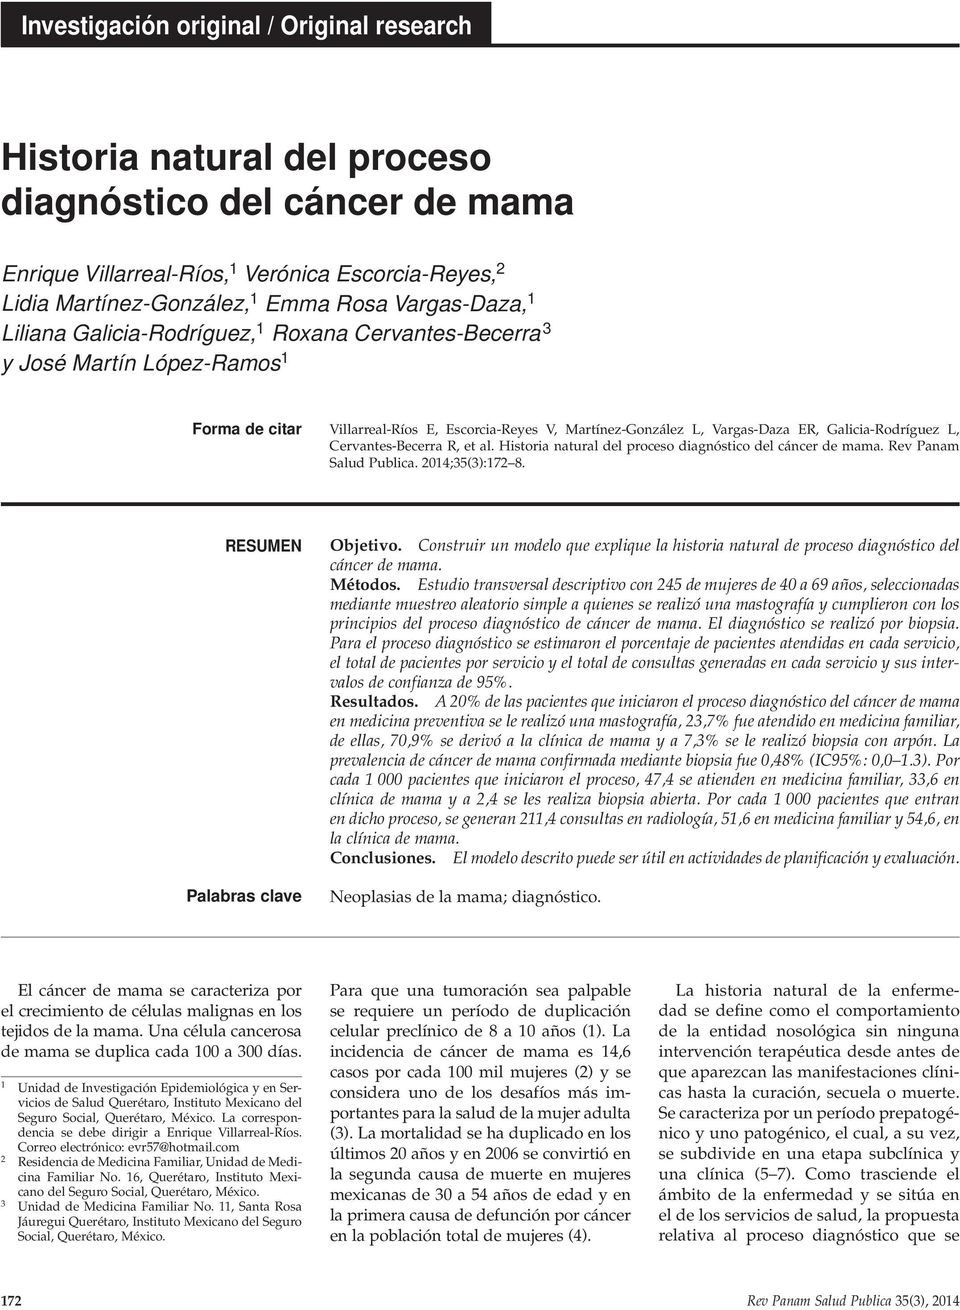 Galicia-Rodríguez L, Cervantes-Becerra R, et al. Historia natural del proceso diagnóstico del cáncer de mama. Rev Panam Salud Publica. 2014;35(3):172 8. resumen Palabras clave Objetivo.